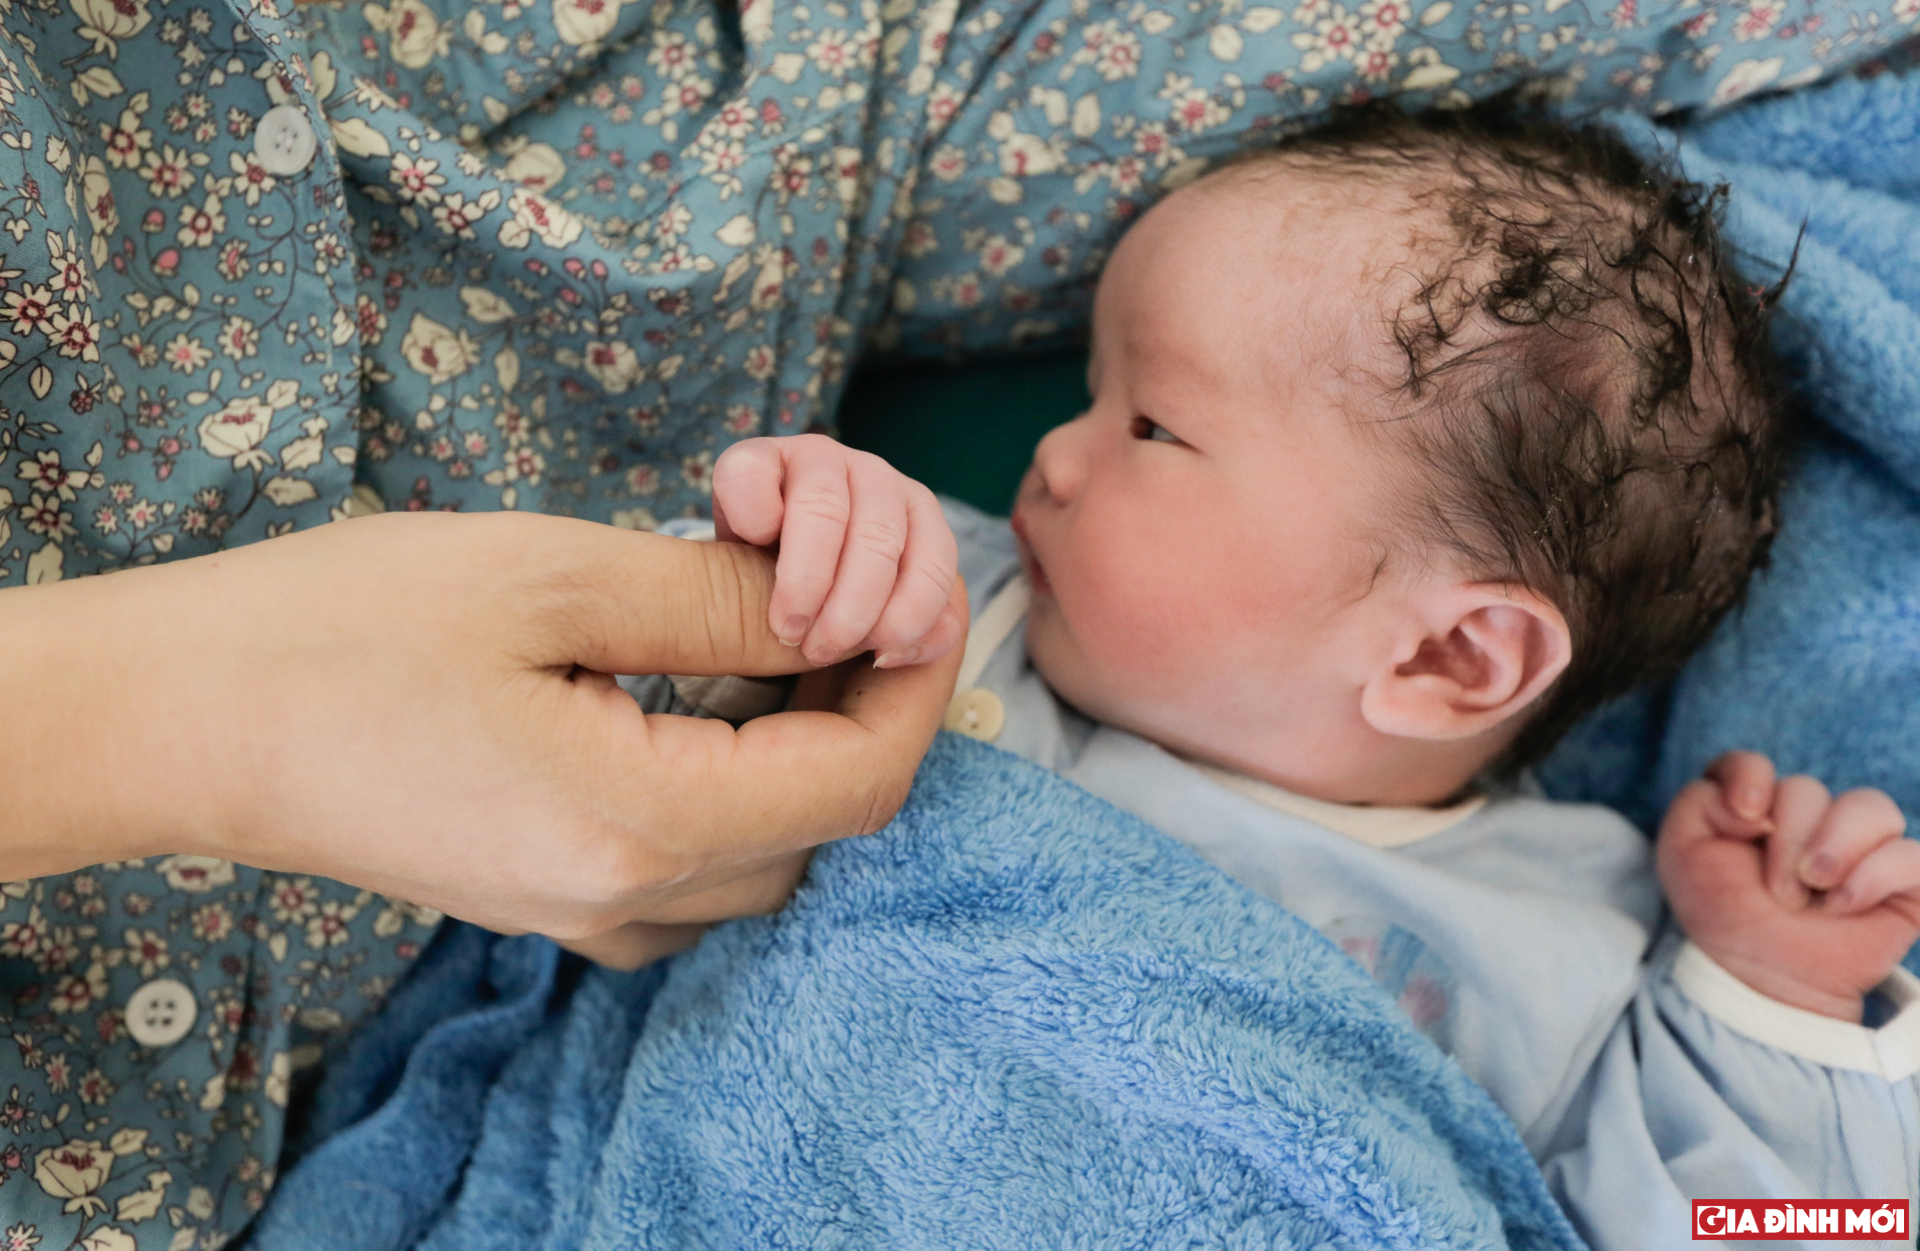 Để tránh bị khó xử khi đến thăm em bé mới chào đời, hãy chú ý đến những kiến thức cơ bản về sức khỏe mẹ và bé